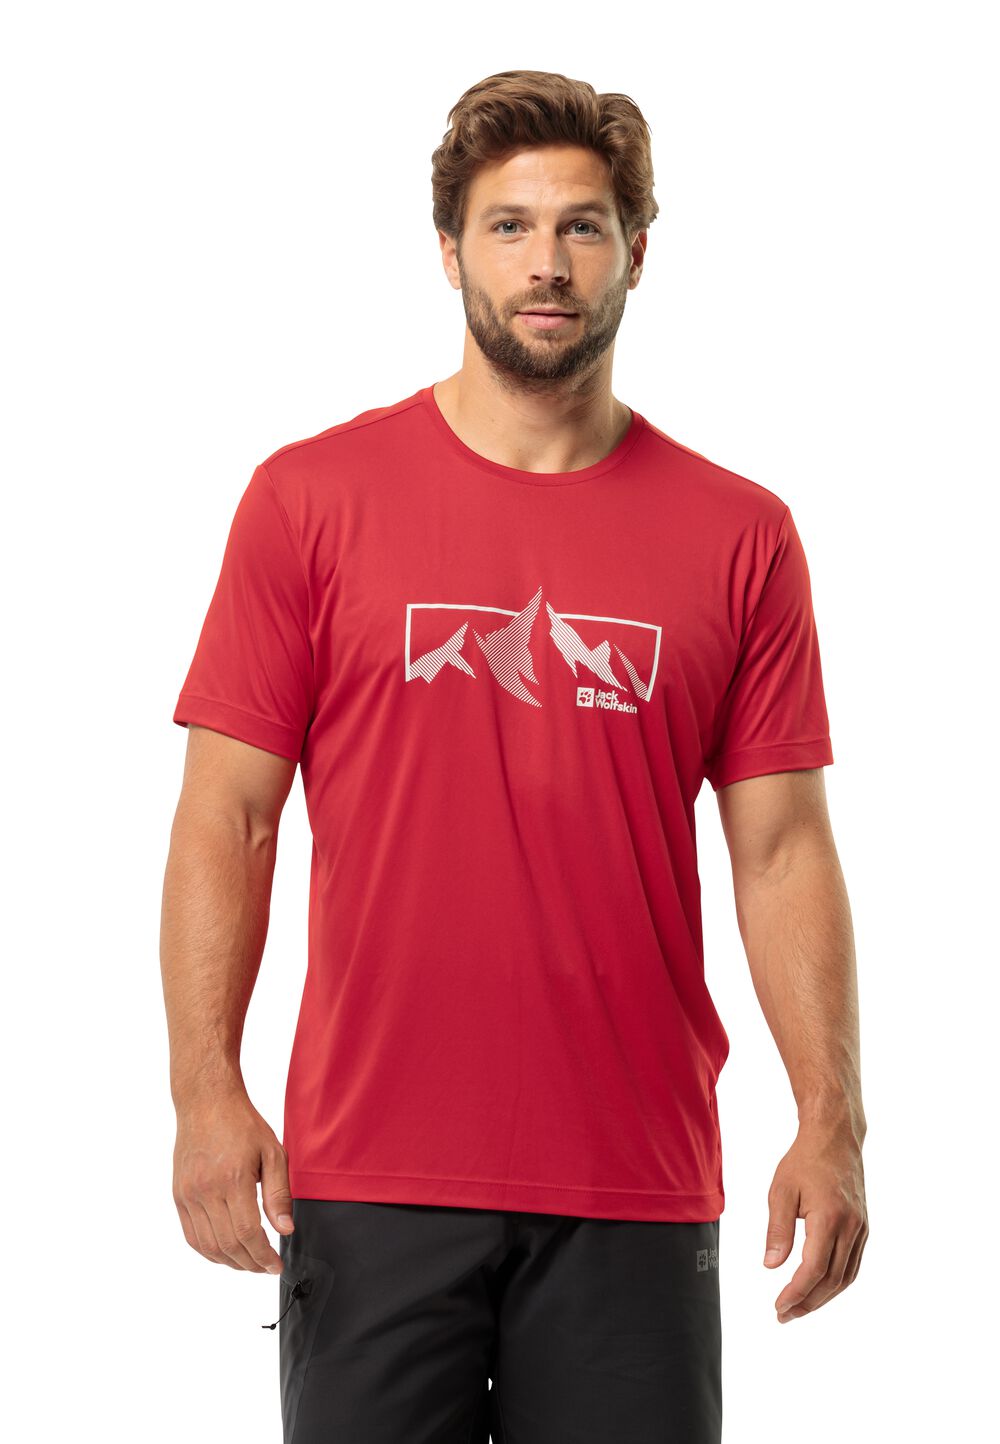 Jack Wolfskin Funktionsshirt Herren Peak Graphic T-Shirt Men M rot red glow von Jack Wolfskin